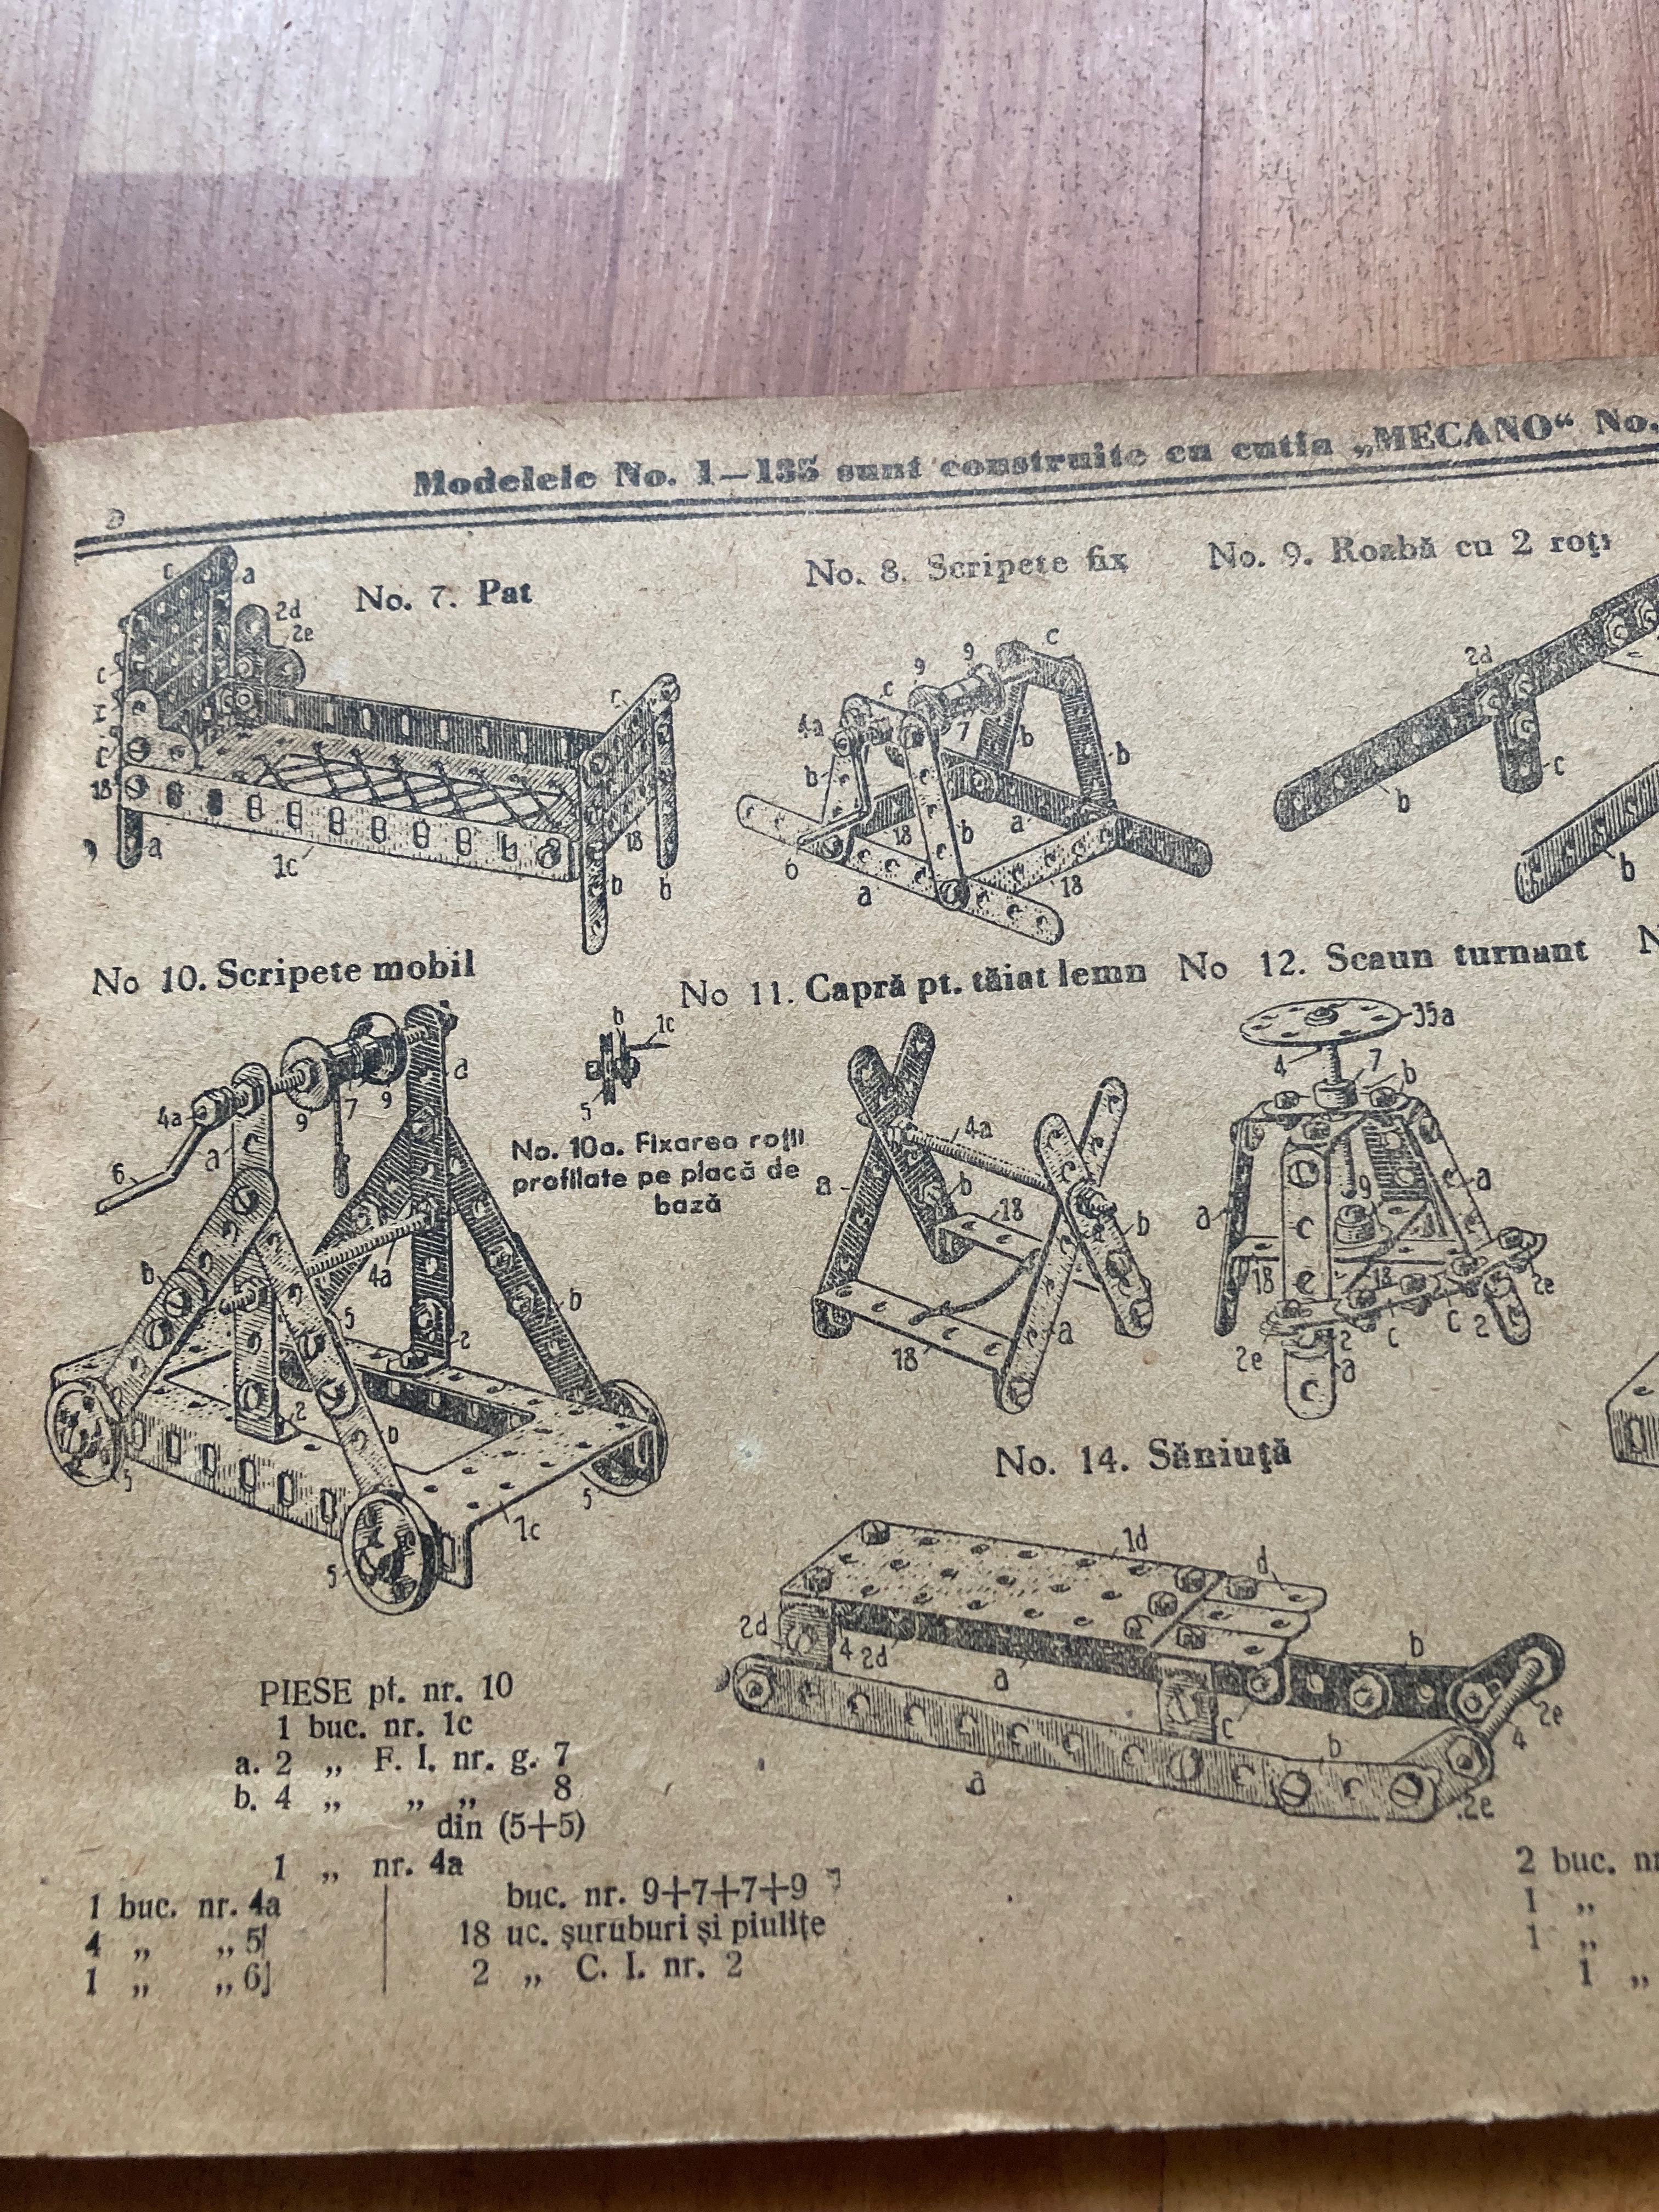 Instrucțiuni Șantierul micului inginer MECANO perioada comunistă